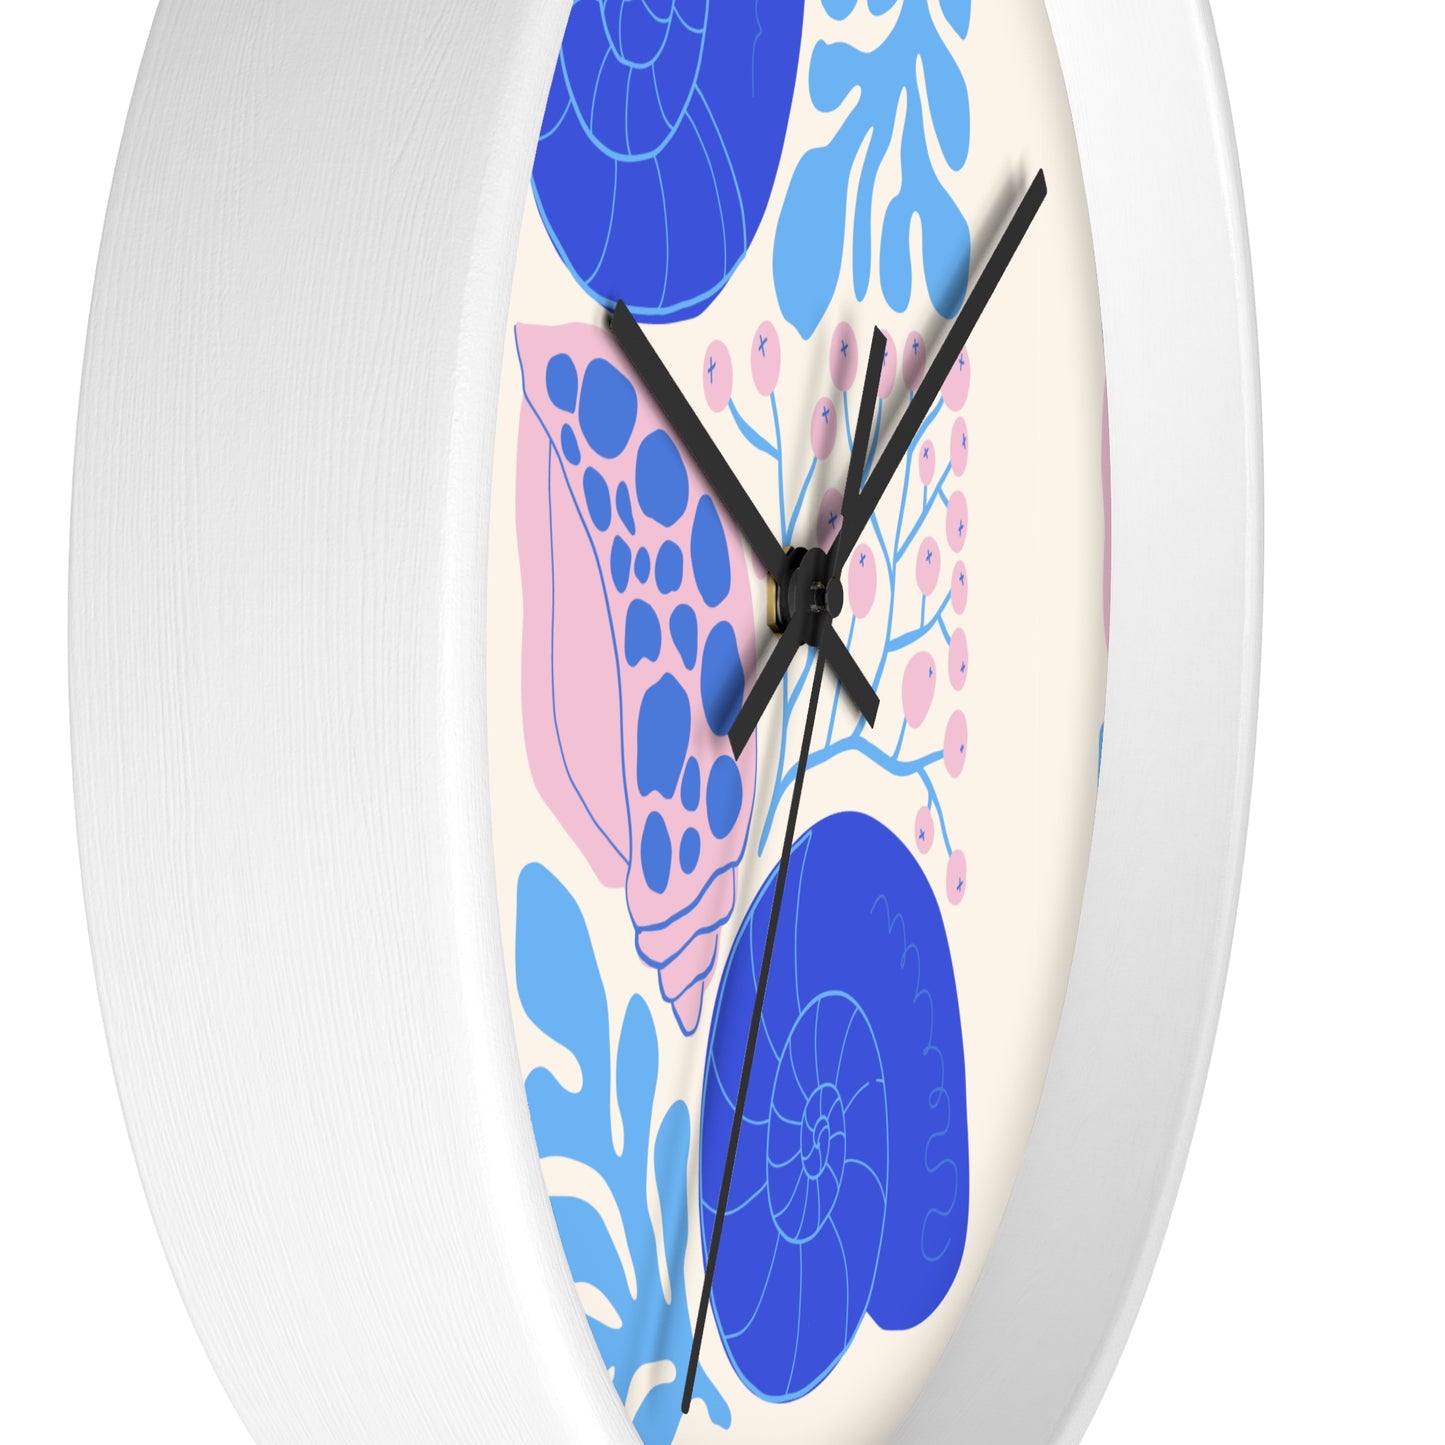 Ocean Seashell Harmony Clock